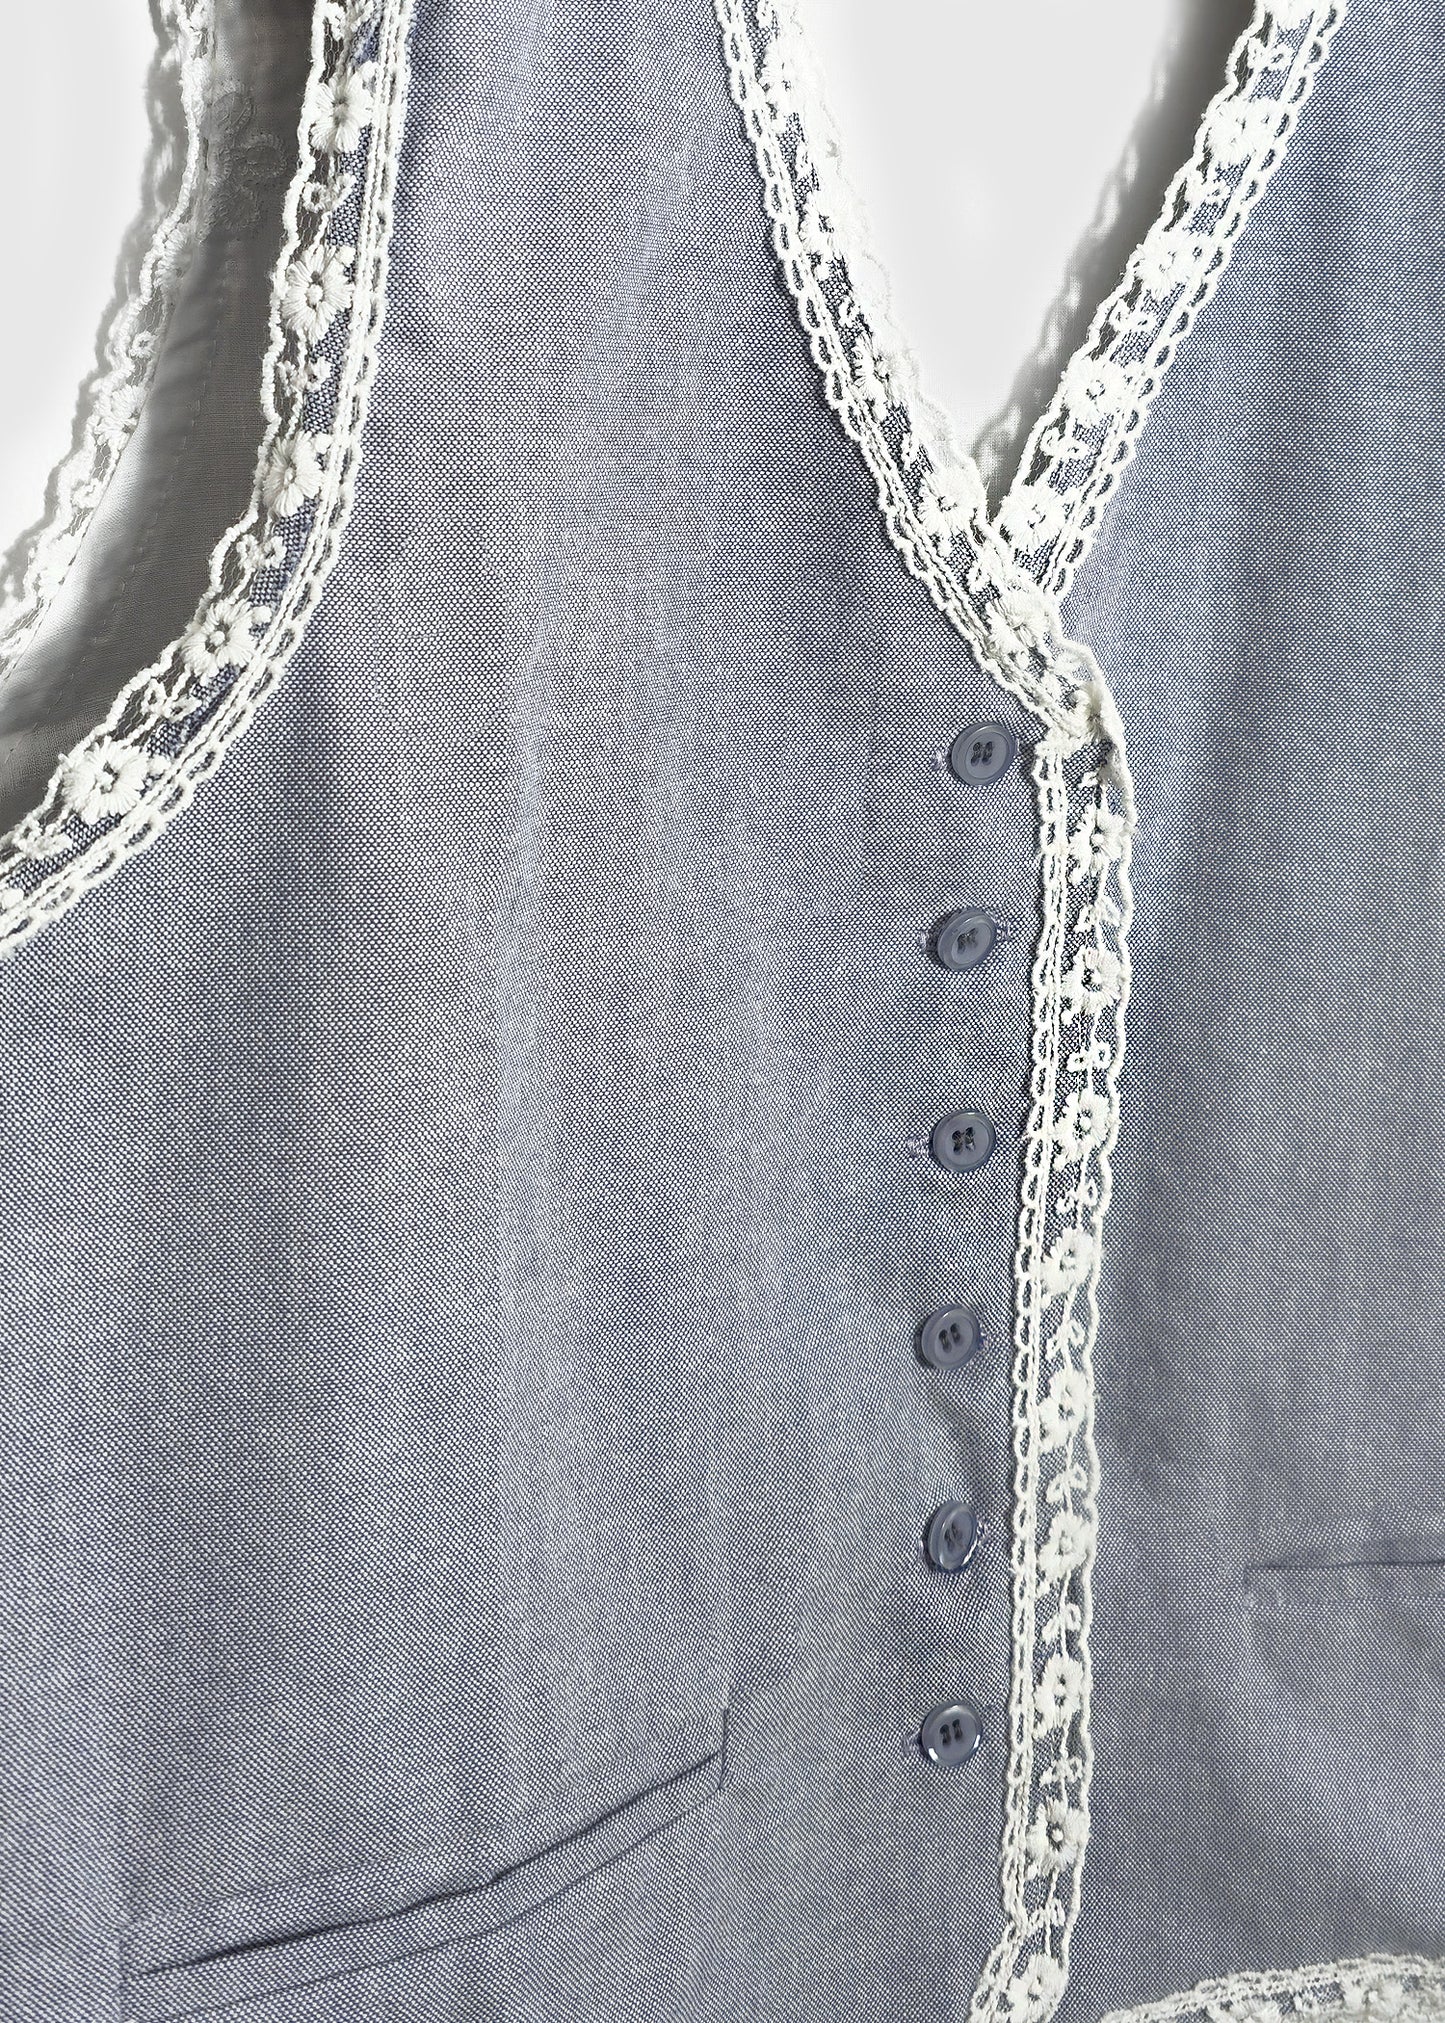 Lace Trim Button Front Vest